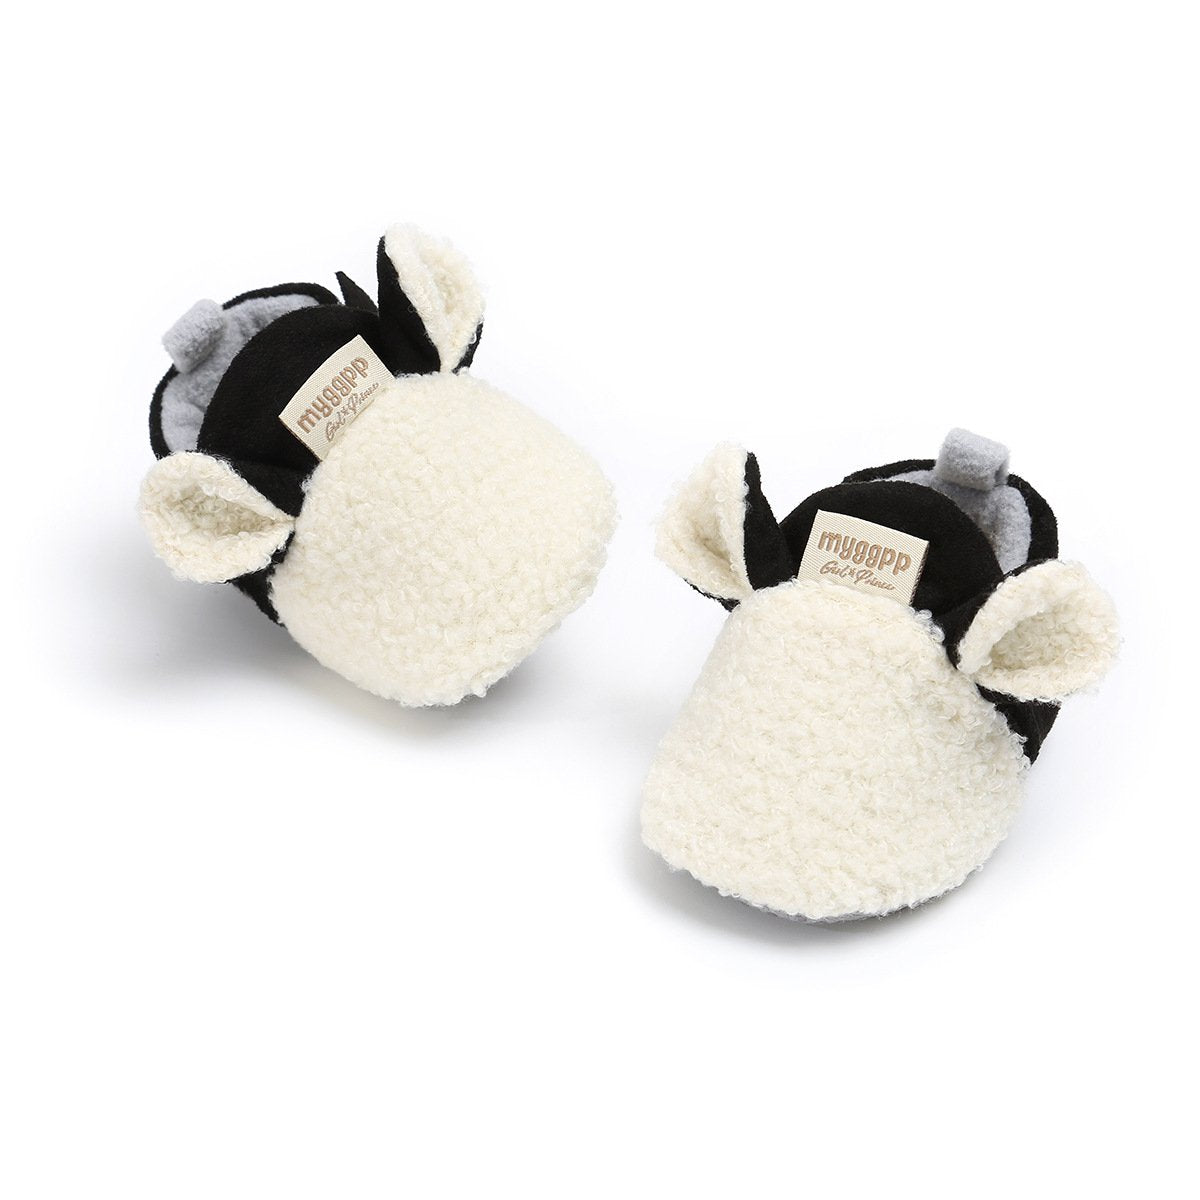 Baby Girl Cotton Plush Shoes Pawlulu